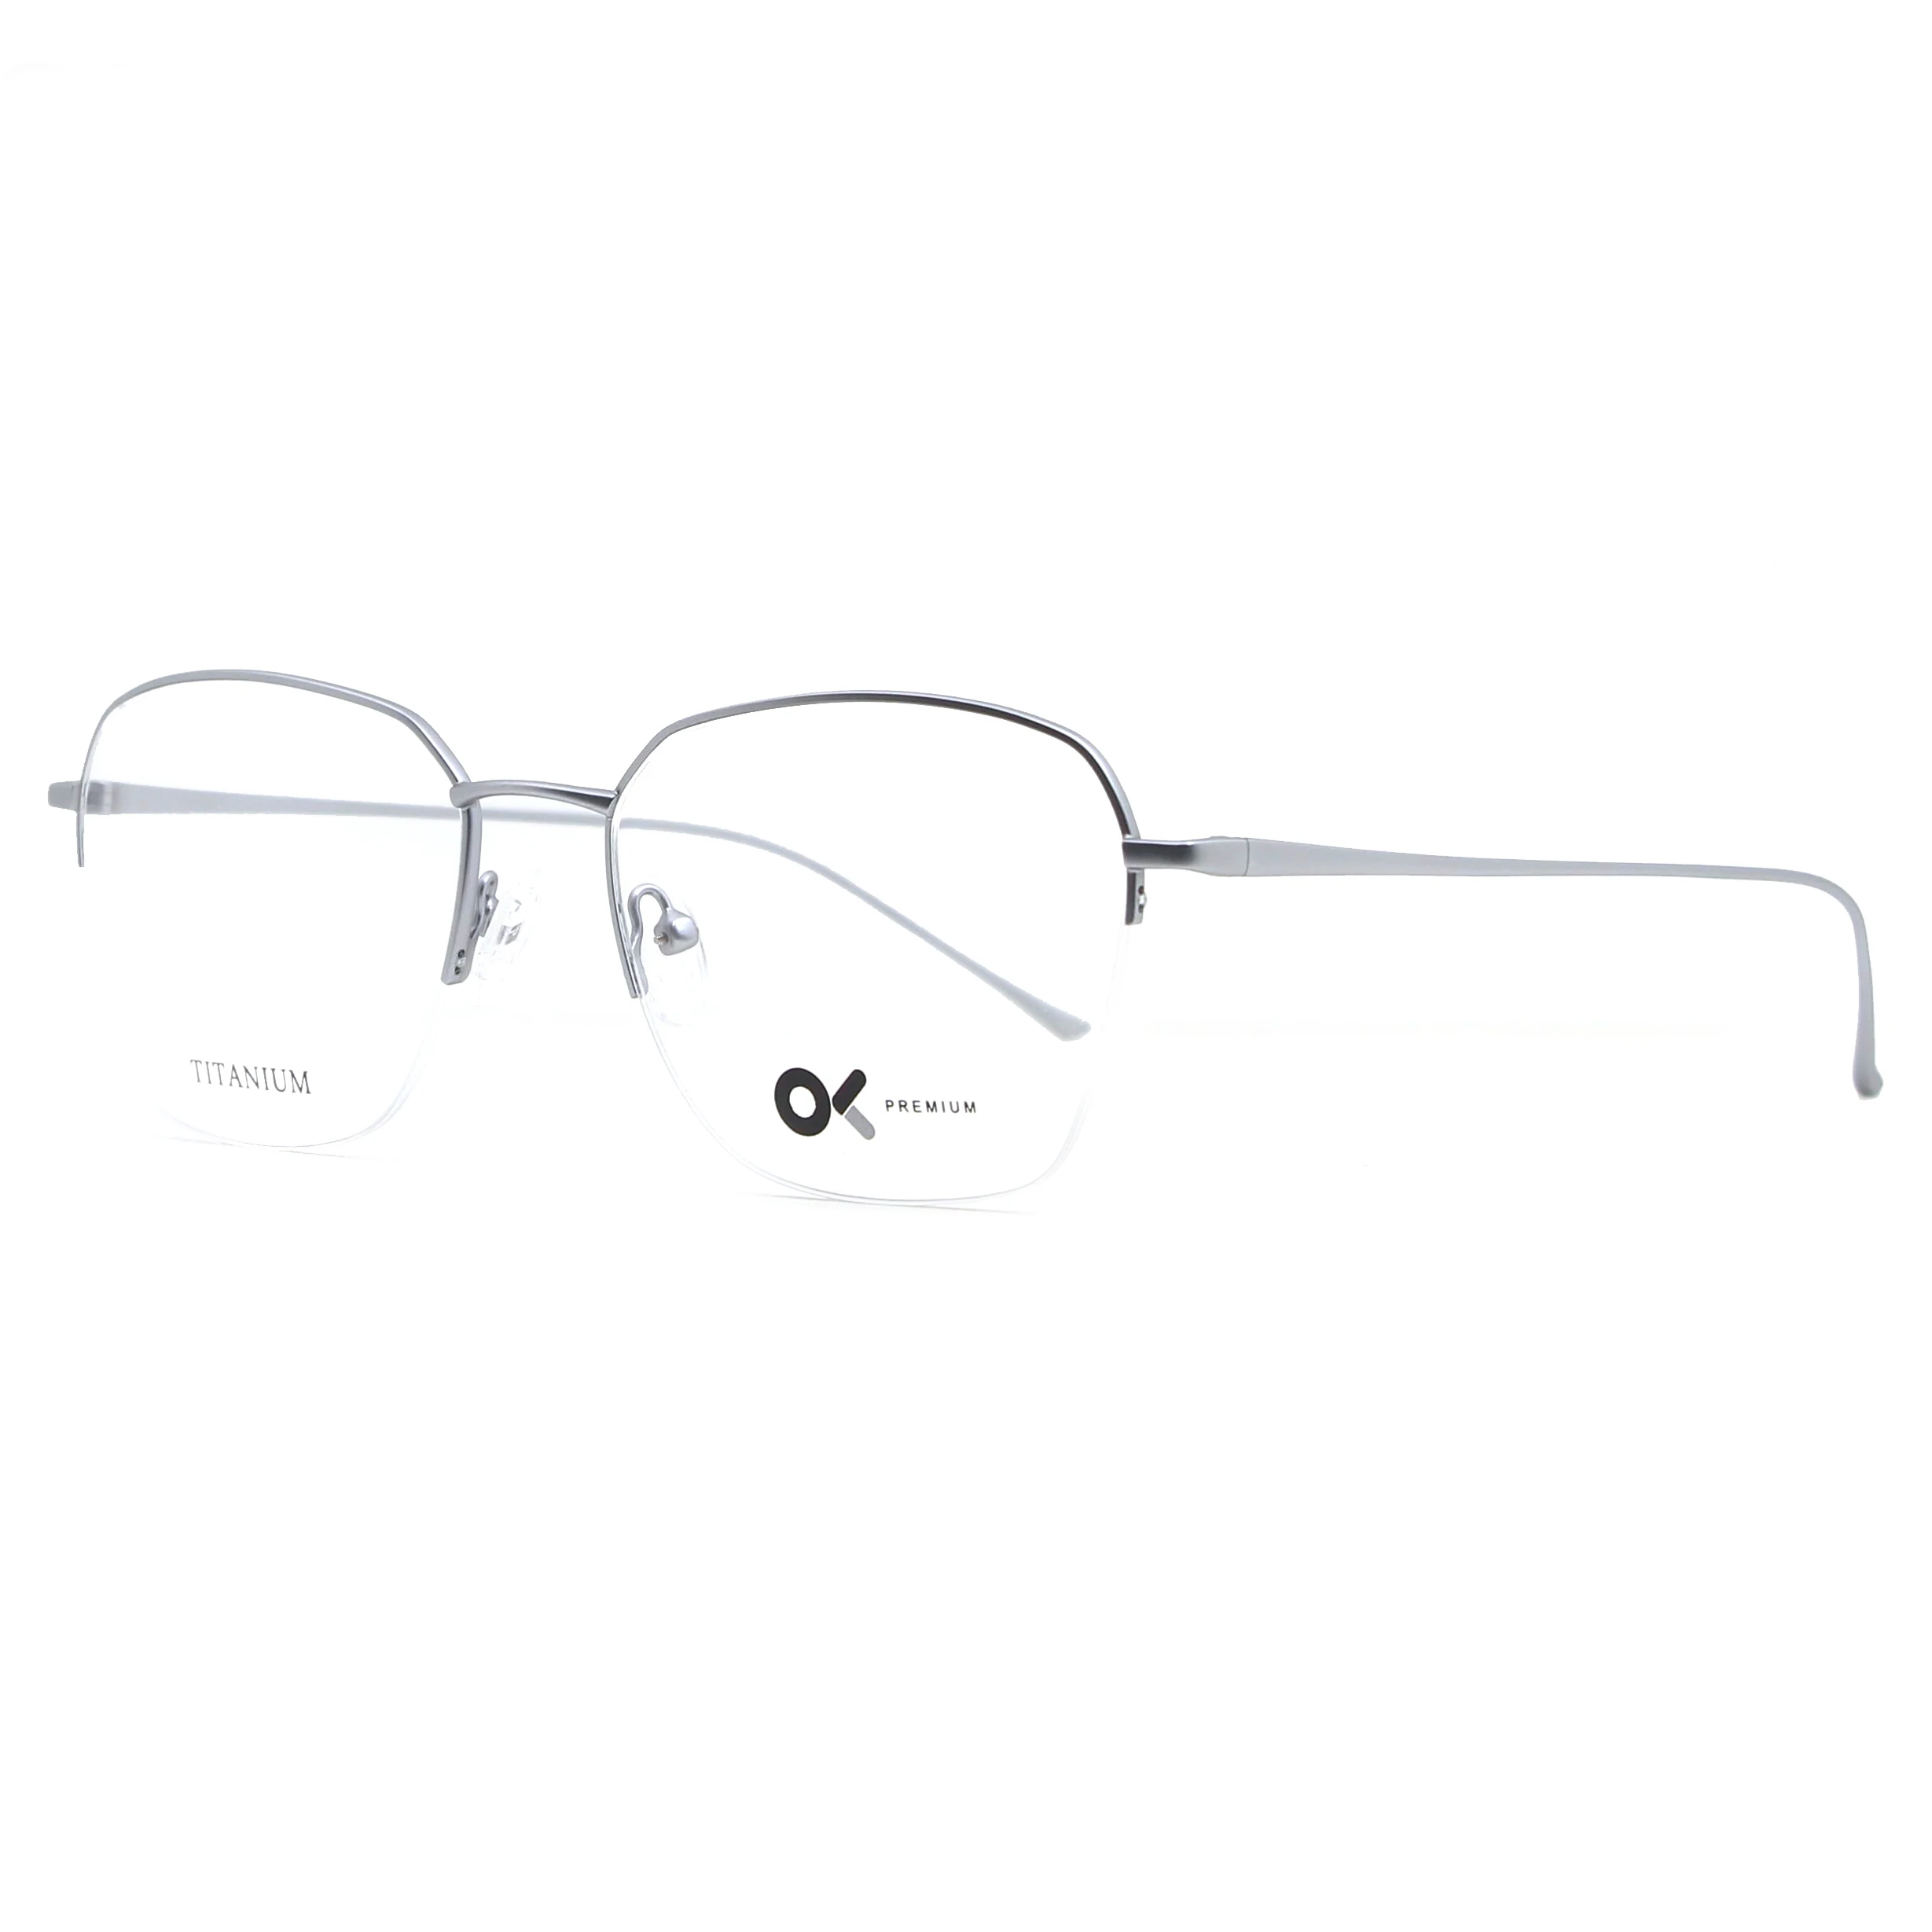 

IP99104 Semi-rimless titanium frame optical glasses hot selling titanium glasses occhiali, C1 gold, c2 silver, c3 tarnish, c4 black